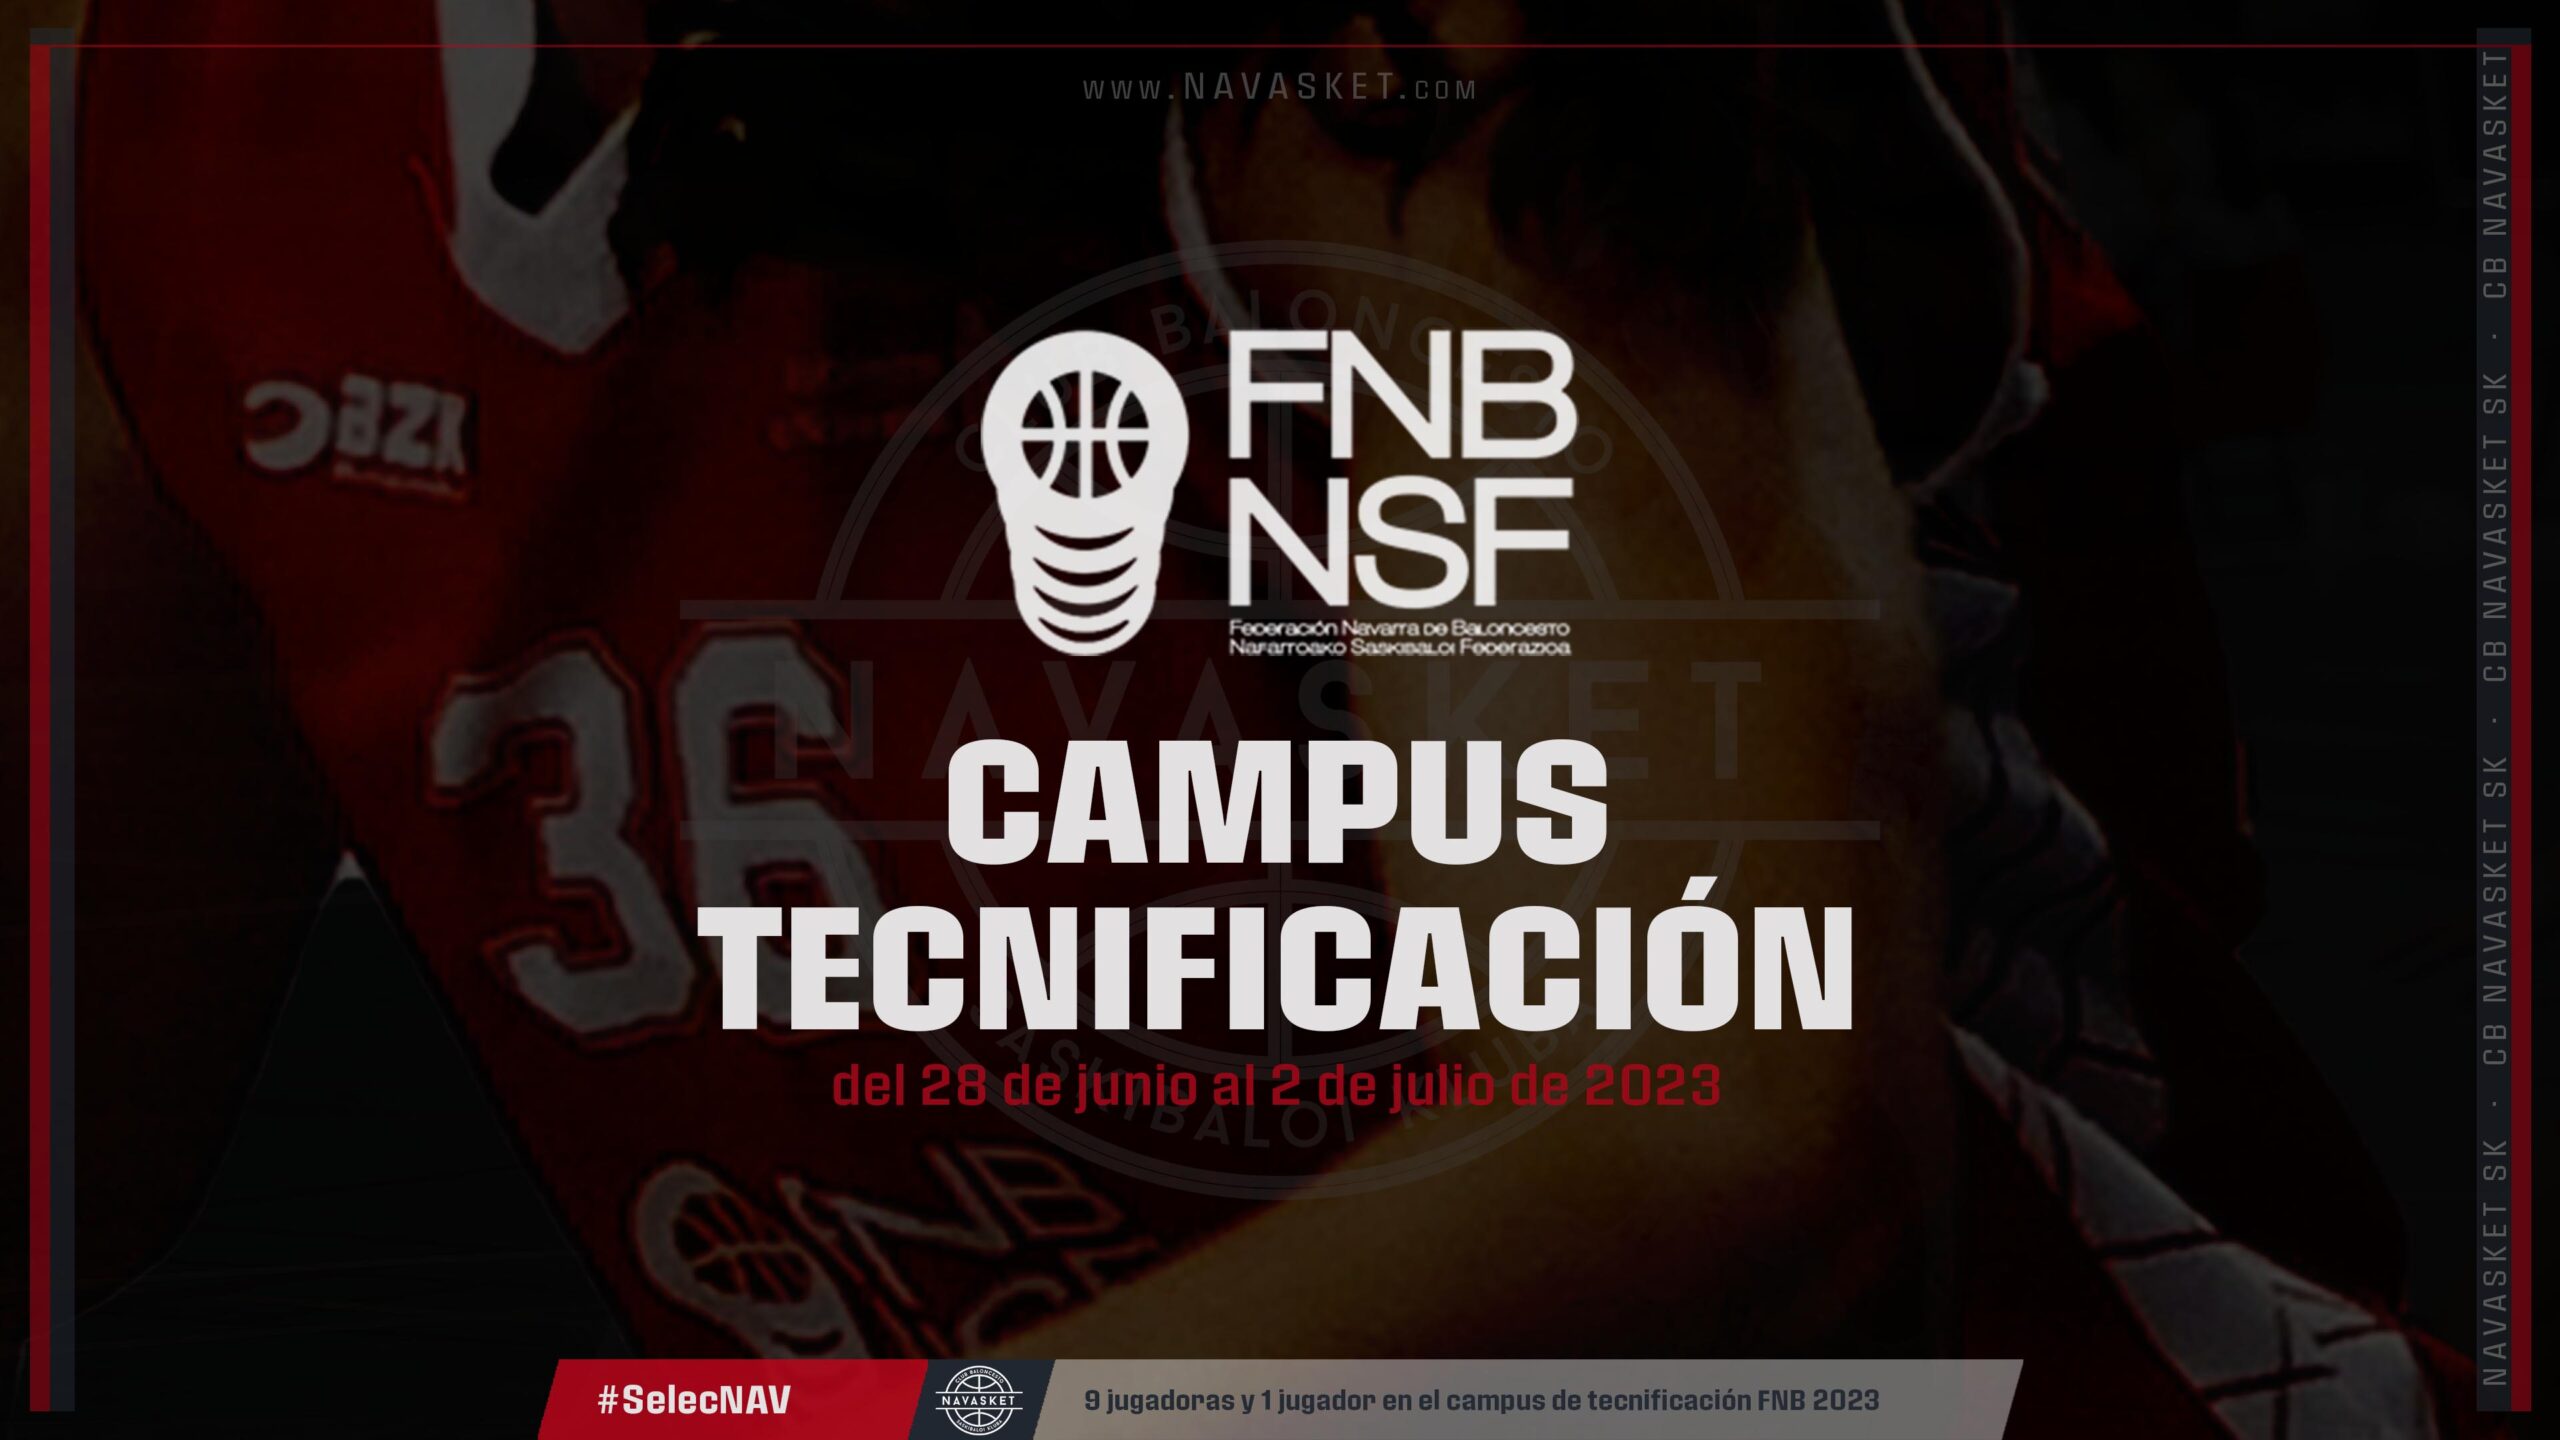 #SelecNAV | Campus Tecnificación FNB 2023